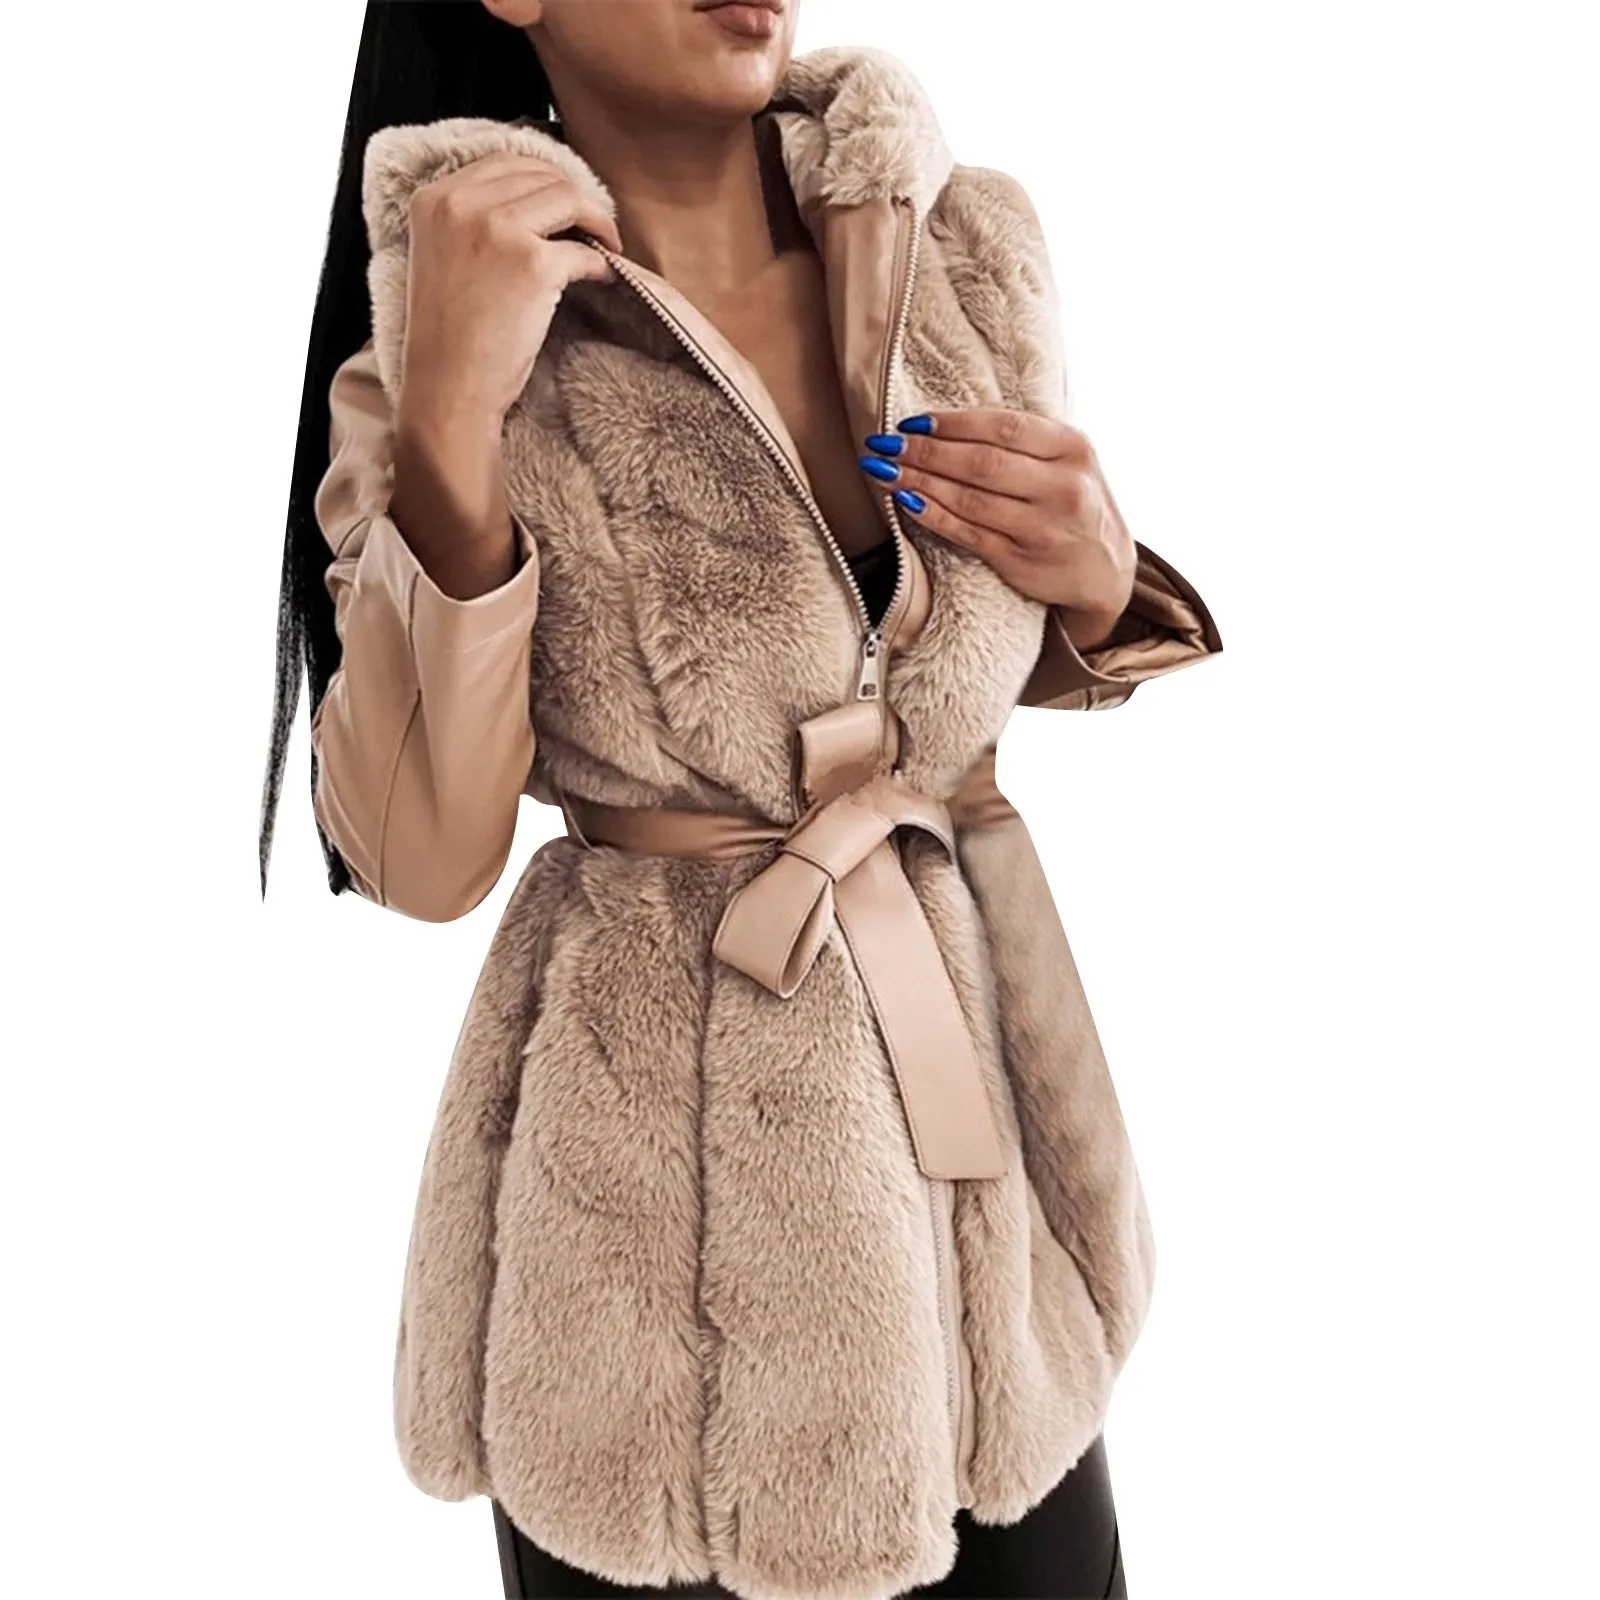 casaco com capuz feminino com capuz jaqueta com capuz jaqueta com capuz jaqueta com capuz jaqueta com capuz jaqueta com capuz